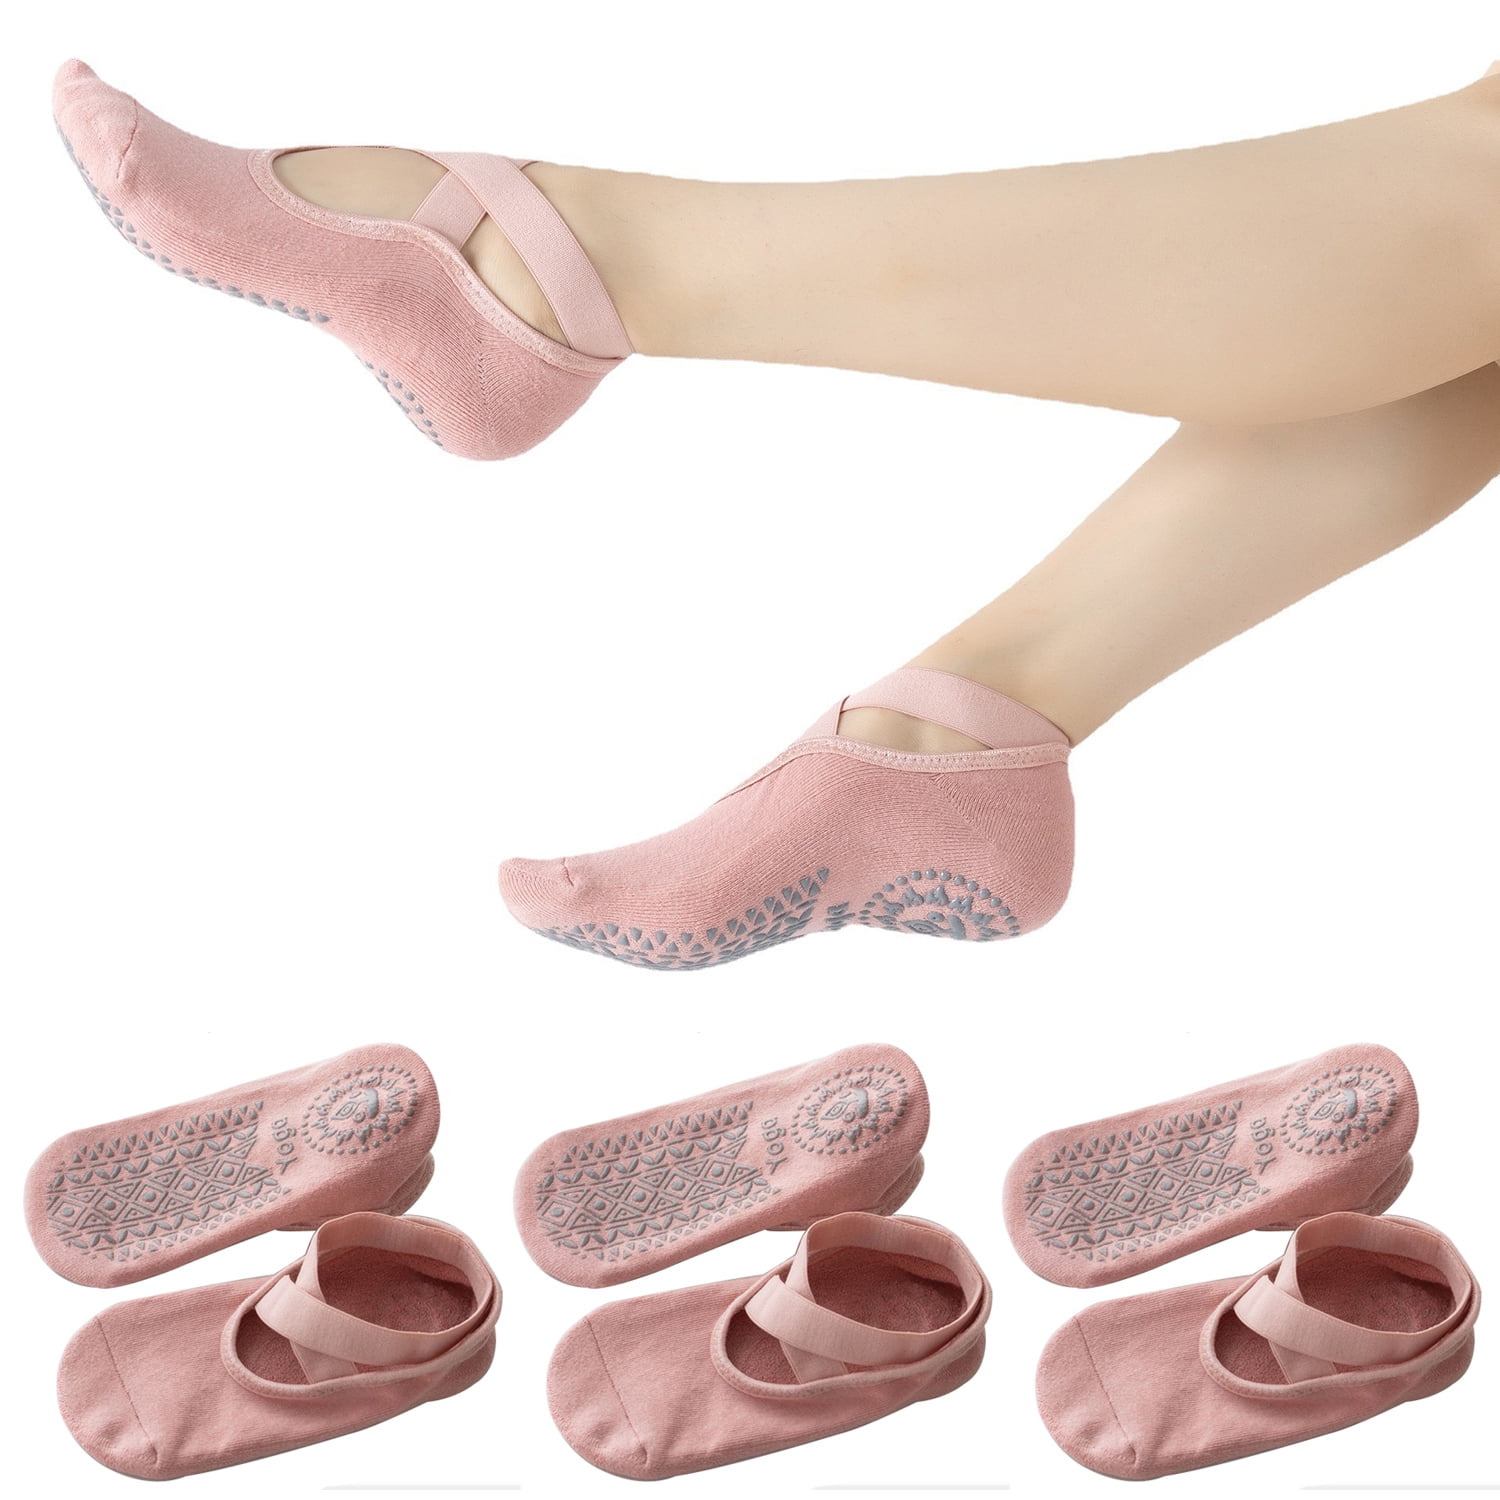 Handepo Dance Shoe Covers Sports Socks for Carpet Floors Women's Yoga Socks  for Dancing Ballet Outdoors at  Women's Clothing store